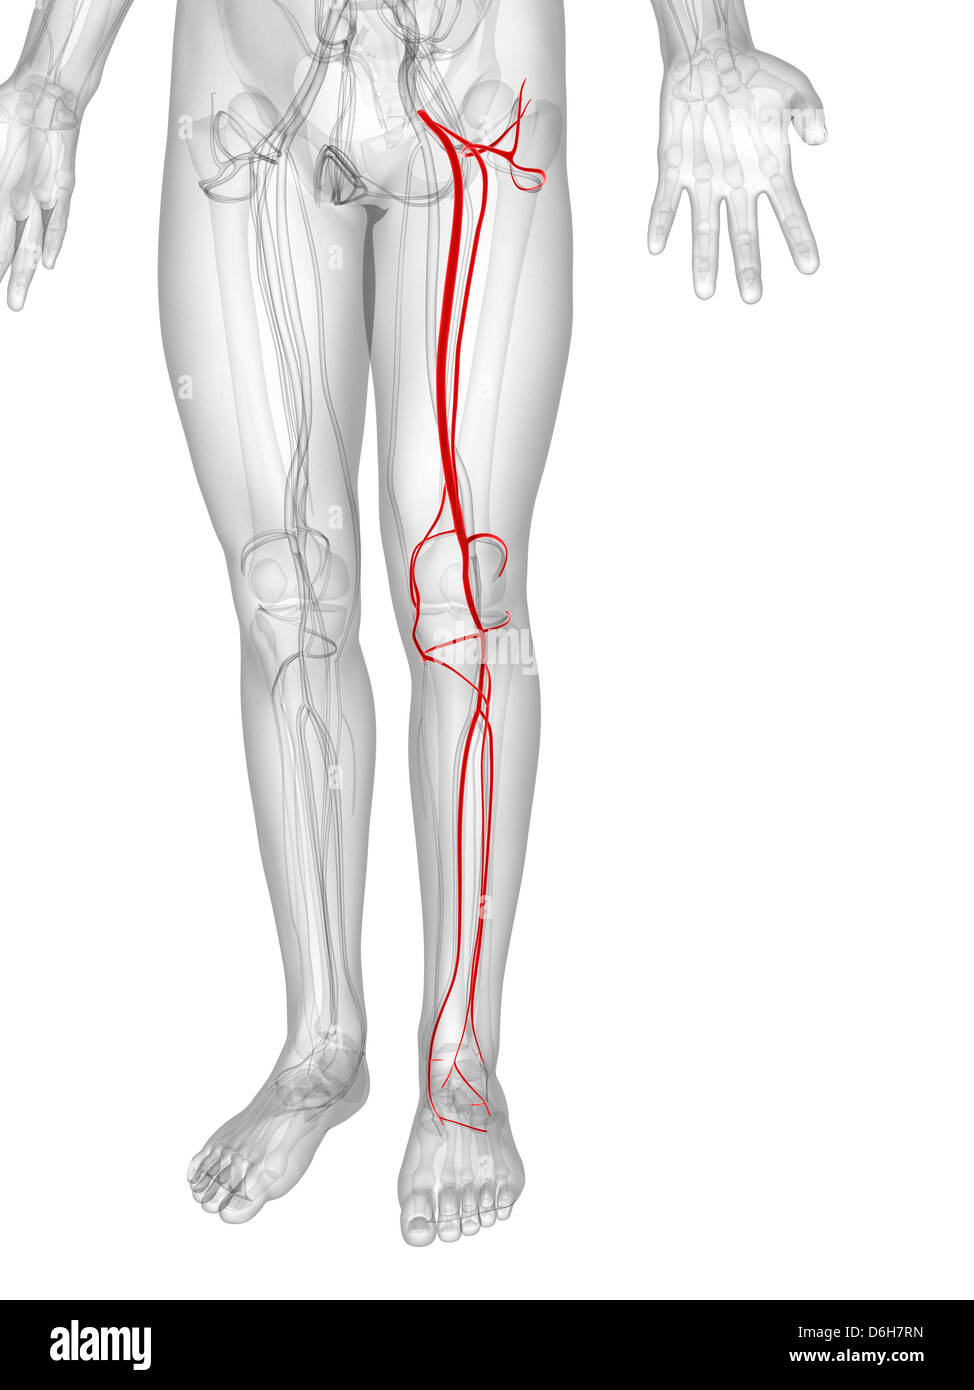 Операция шунтирование ног. Шунтирование атеросклероза нижних конечностей. Шунт артерии нижних конечностей. Шунт бедренной артерии. Шунтирование артерия голени.